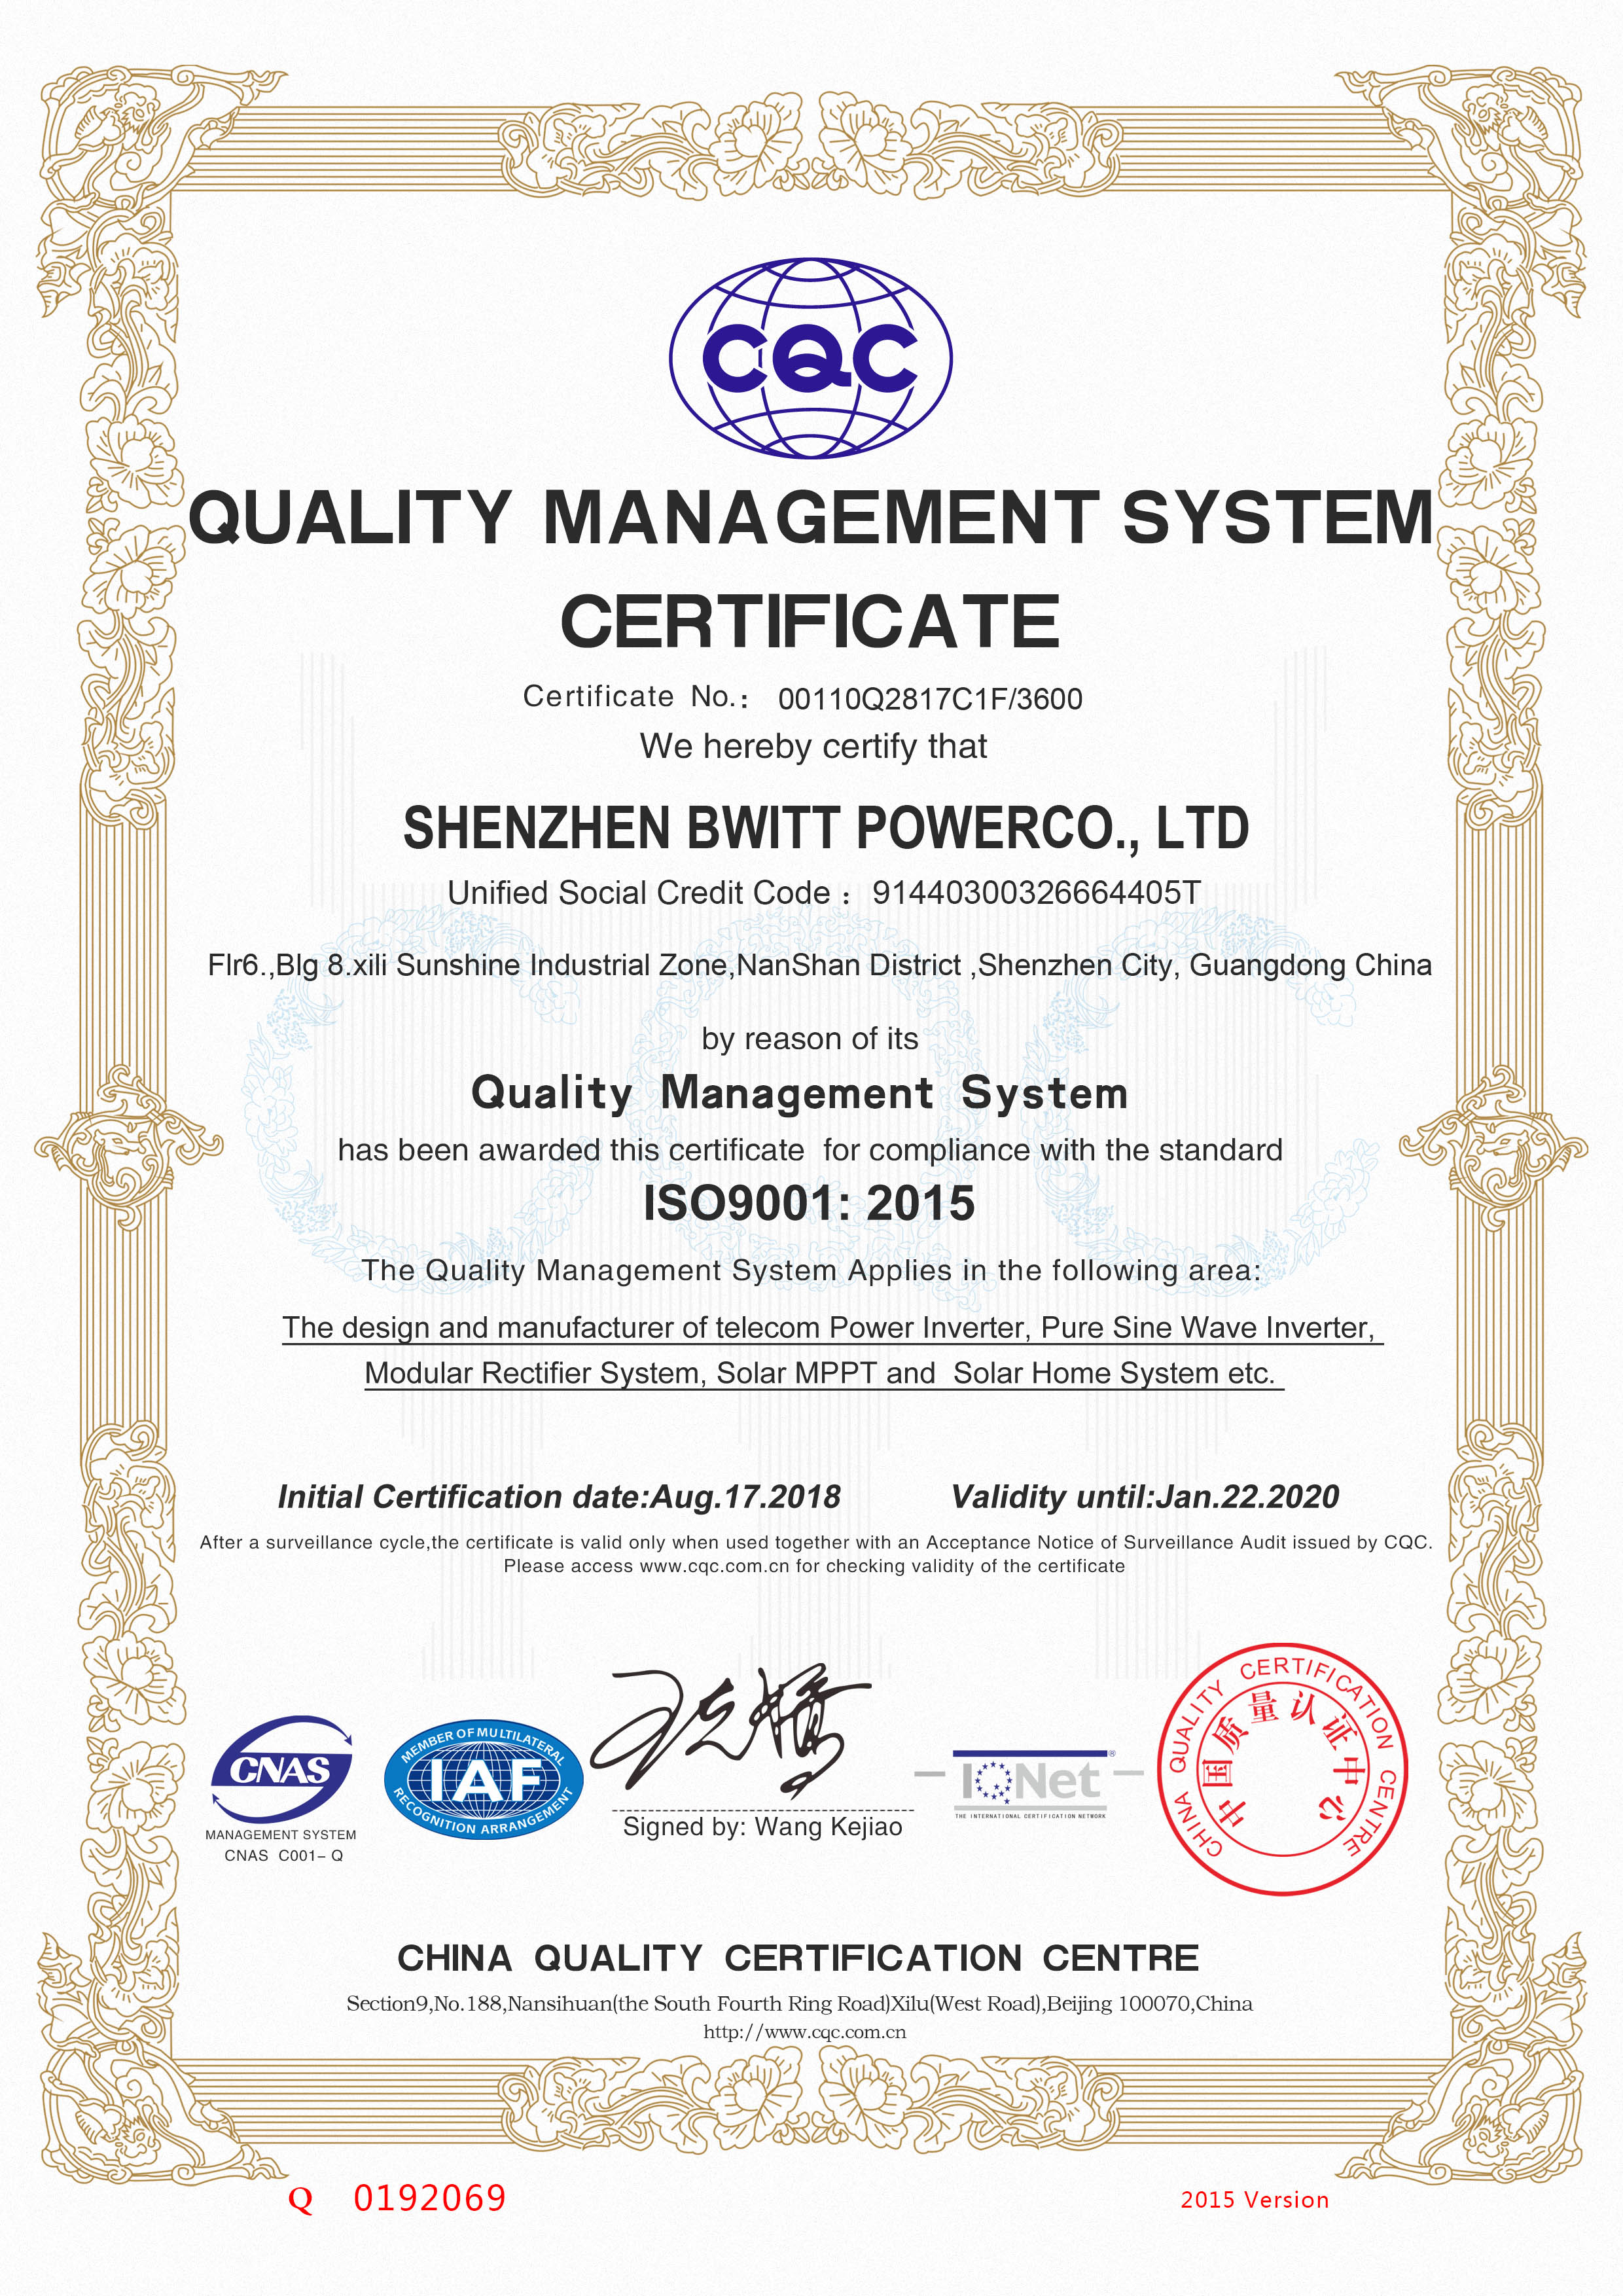 寶威特電源的ISO 9001質量證書